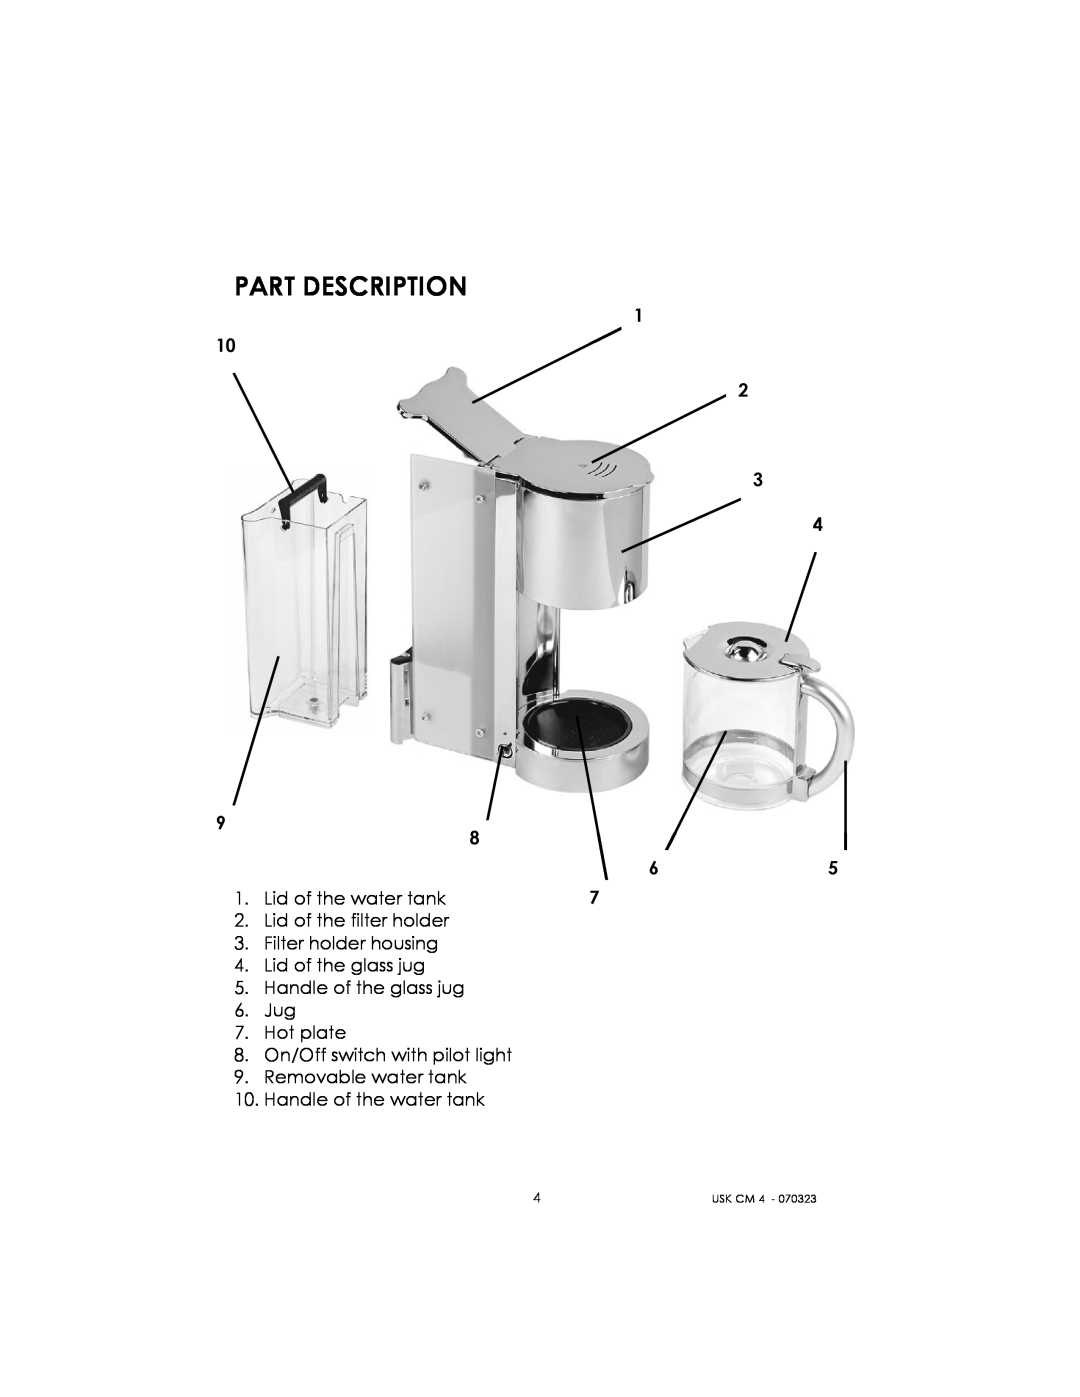 Kalorik USK CM 4 manual Part Description, Lid of the water tank, Lid of the filter holder 3. Filter holder housing, Usk Cm 